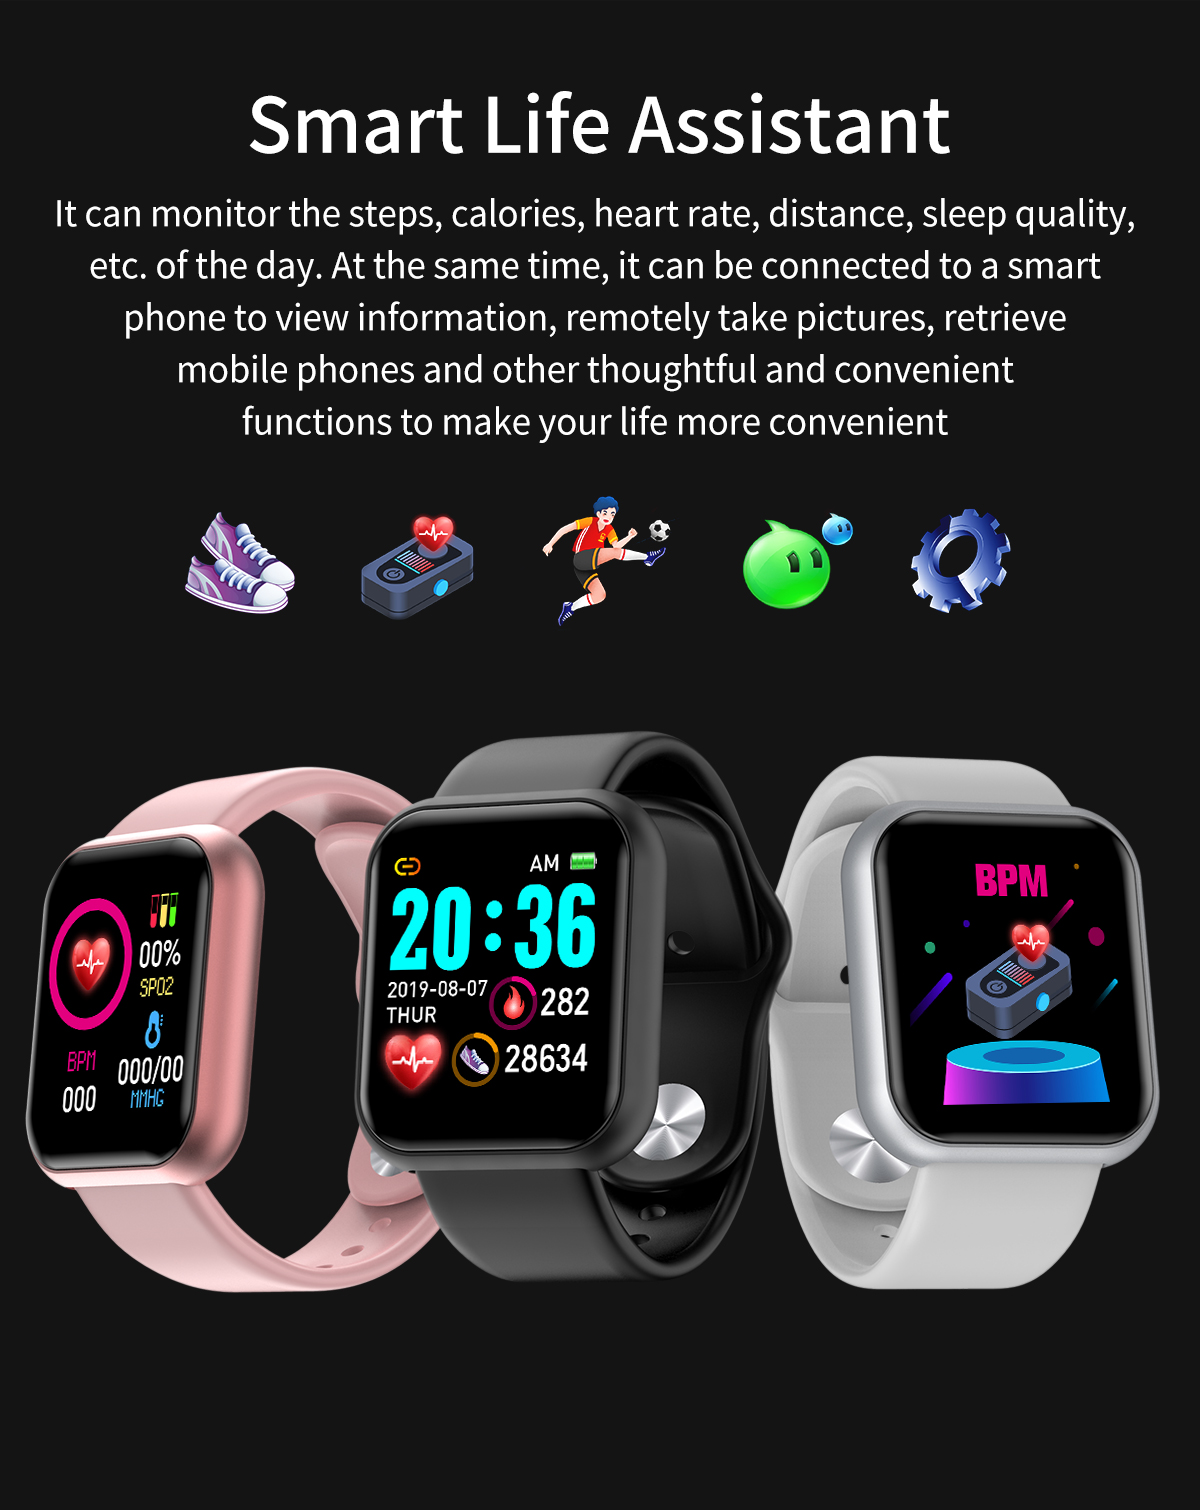 Smartwatch Y68/D20 Amazon Hot Sales Smart Bracelet Android Phones Reminder Water Proof Sport Smart Watch Health